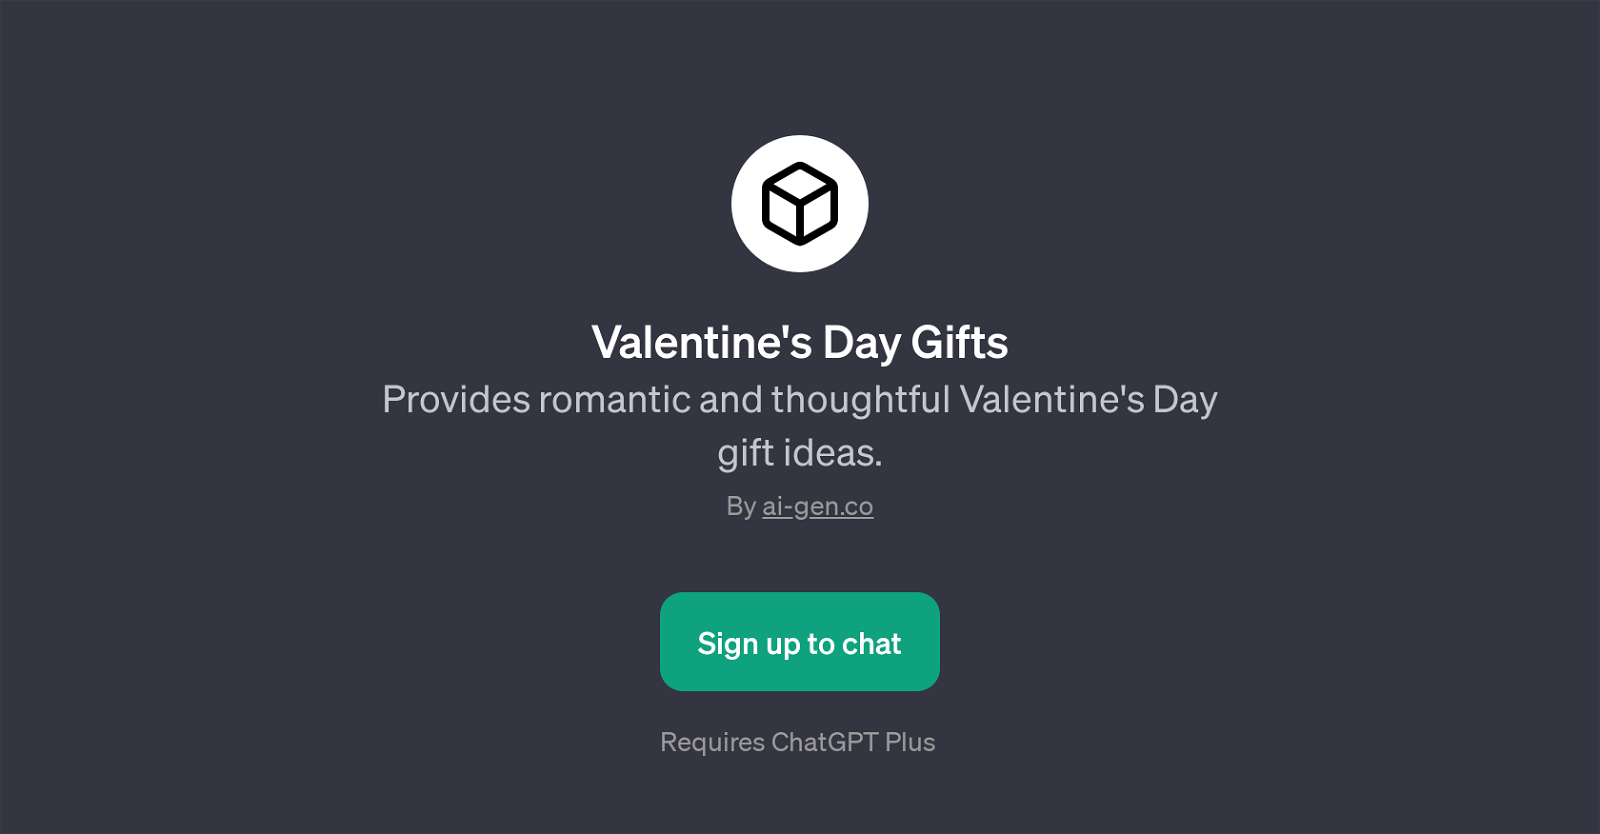 Valentine's Day Gifts website